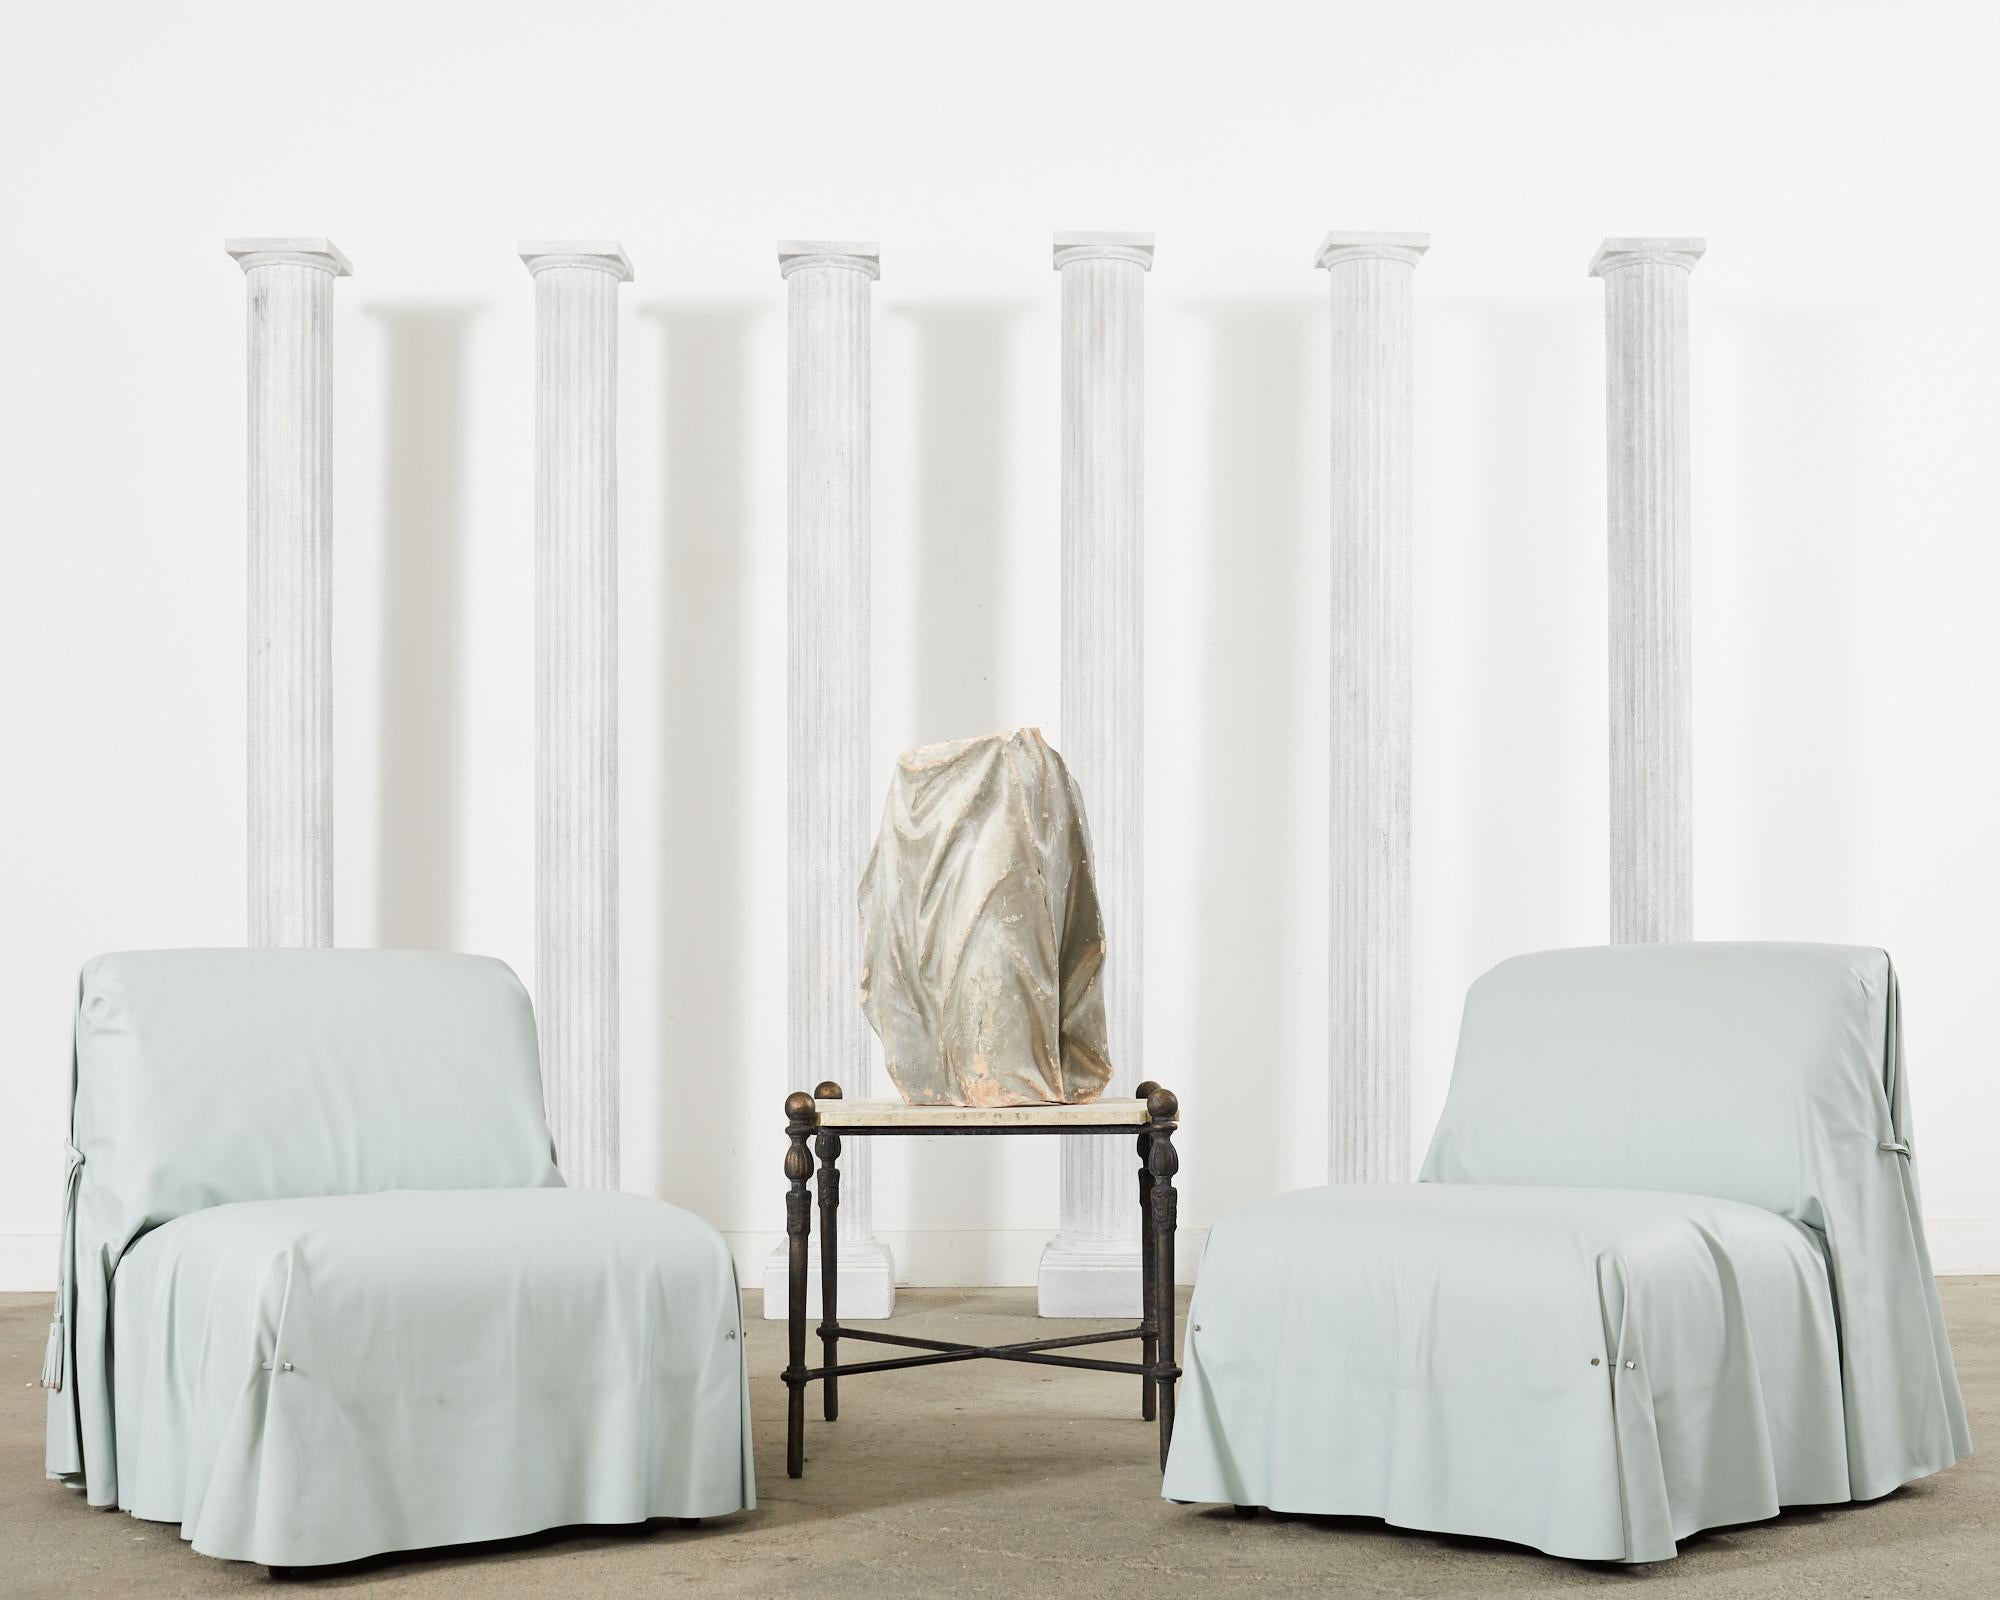 Sublime Satz von sechs seltenen italienischen Fendi Casa Tunica Lounge-Stühle oder Slipper Stühle circa 2015. Die maßgefertigten Stühle sind mit weichem und geschmeidigem arktikblauem Leder bezogen. Das eingepasste Leder ist über die Stühle drapiert